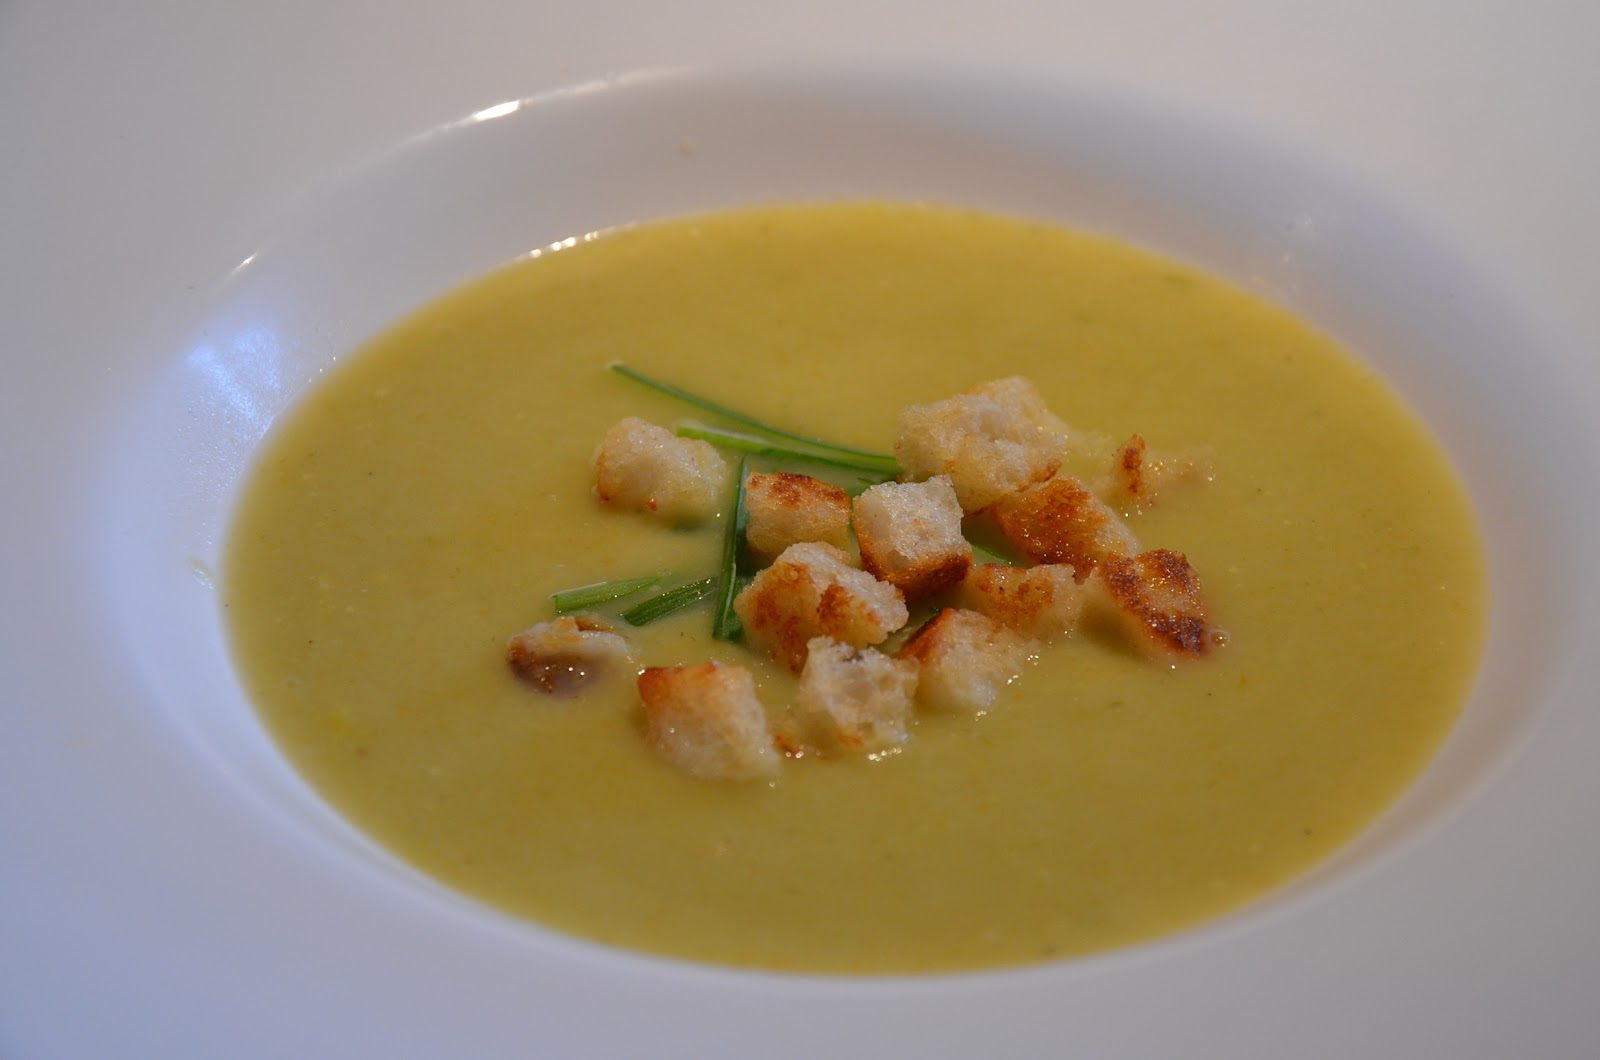 Gerhard kocht!: Kartoffel-Lauch-Suppe mit Croutons